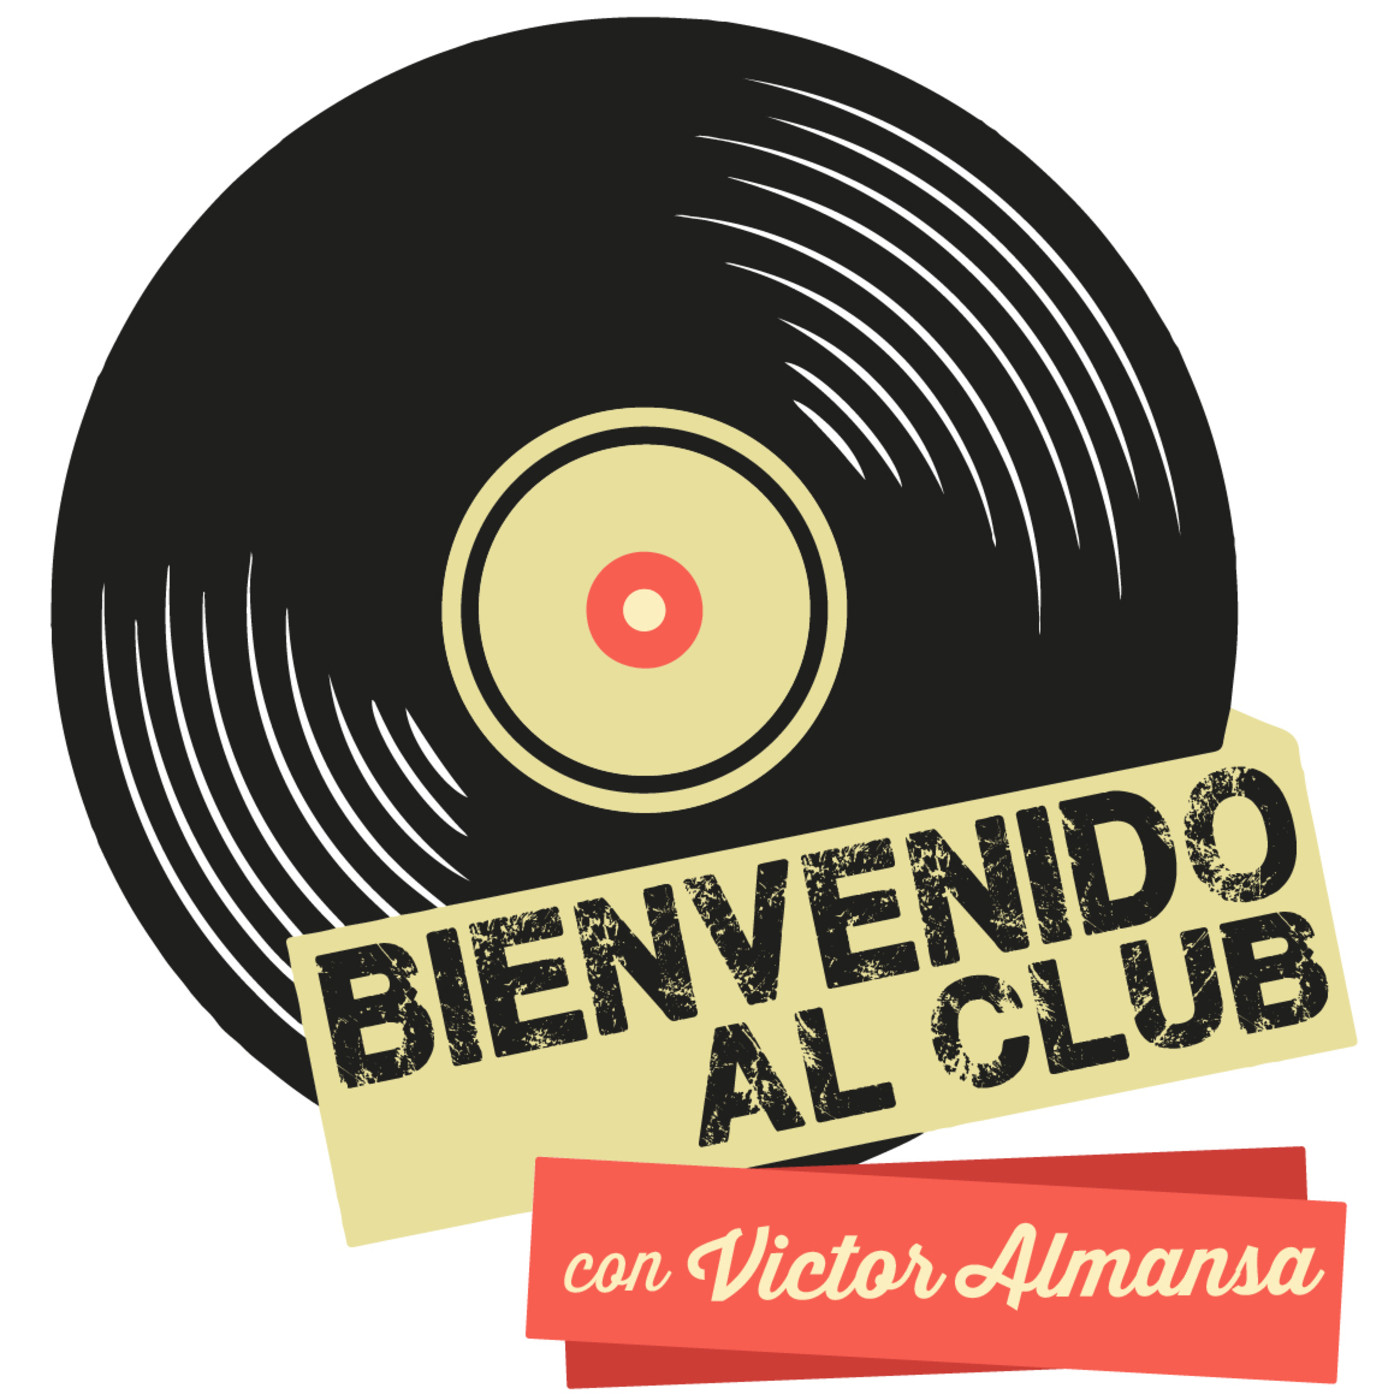 Bienvenido al Club con Victor Almansa (Jueves 5 de Diciembre de 2019)